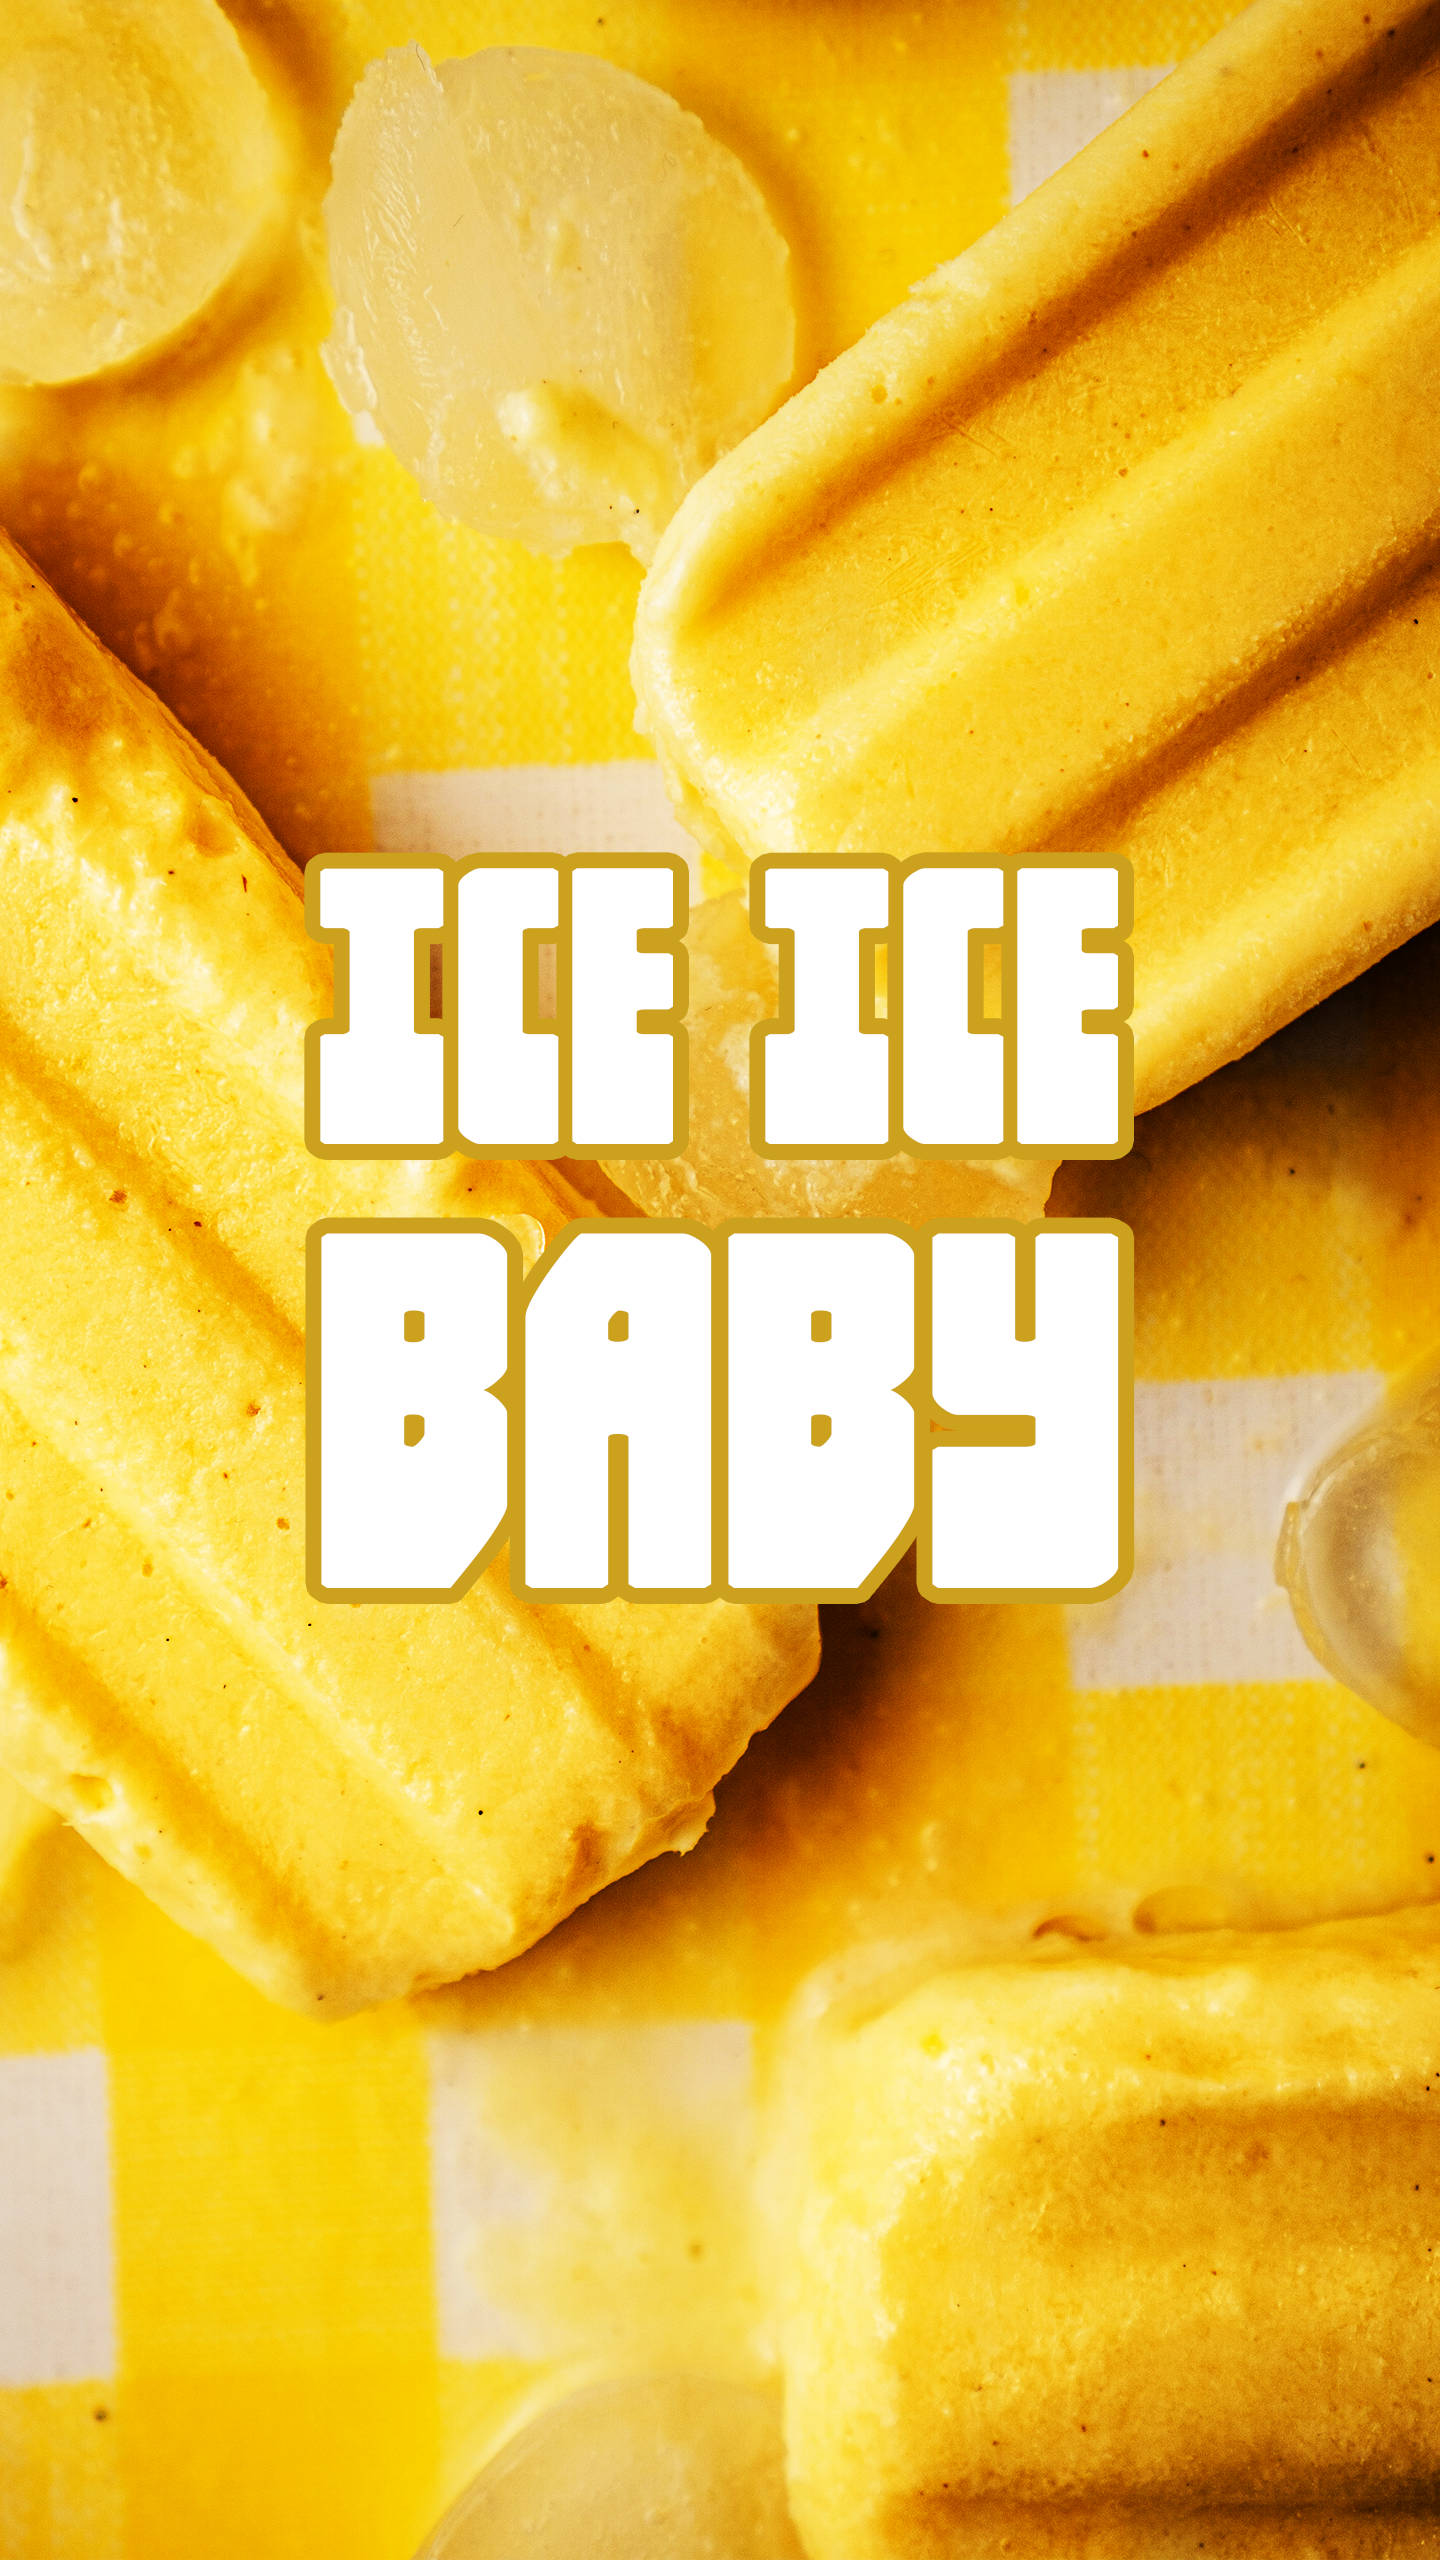 Is Ice Ice Baby 80s Retro Vintage Wallpaper